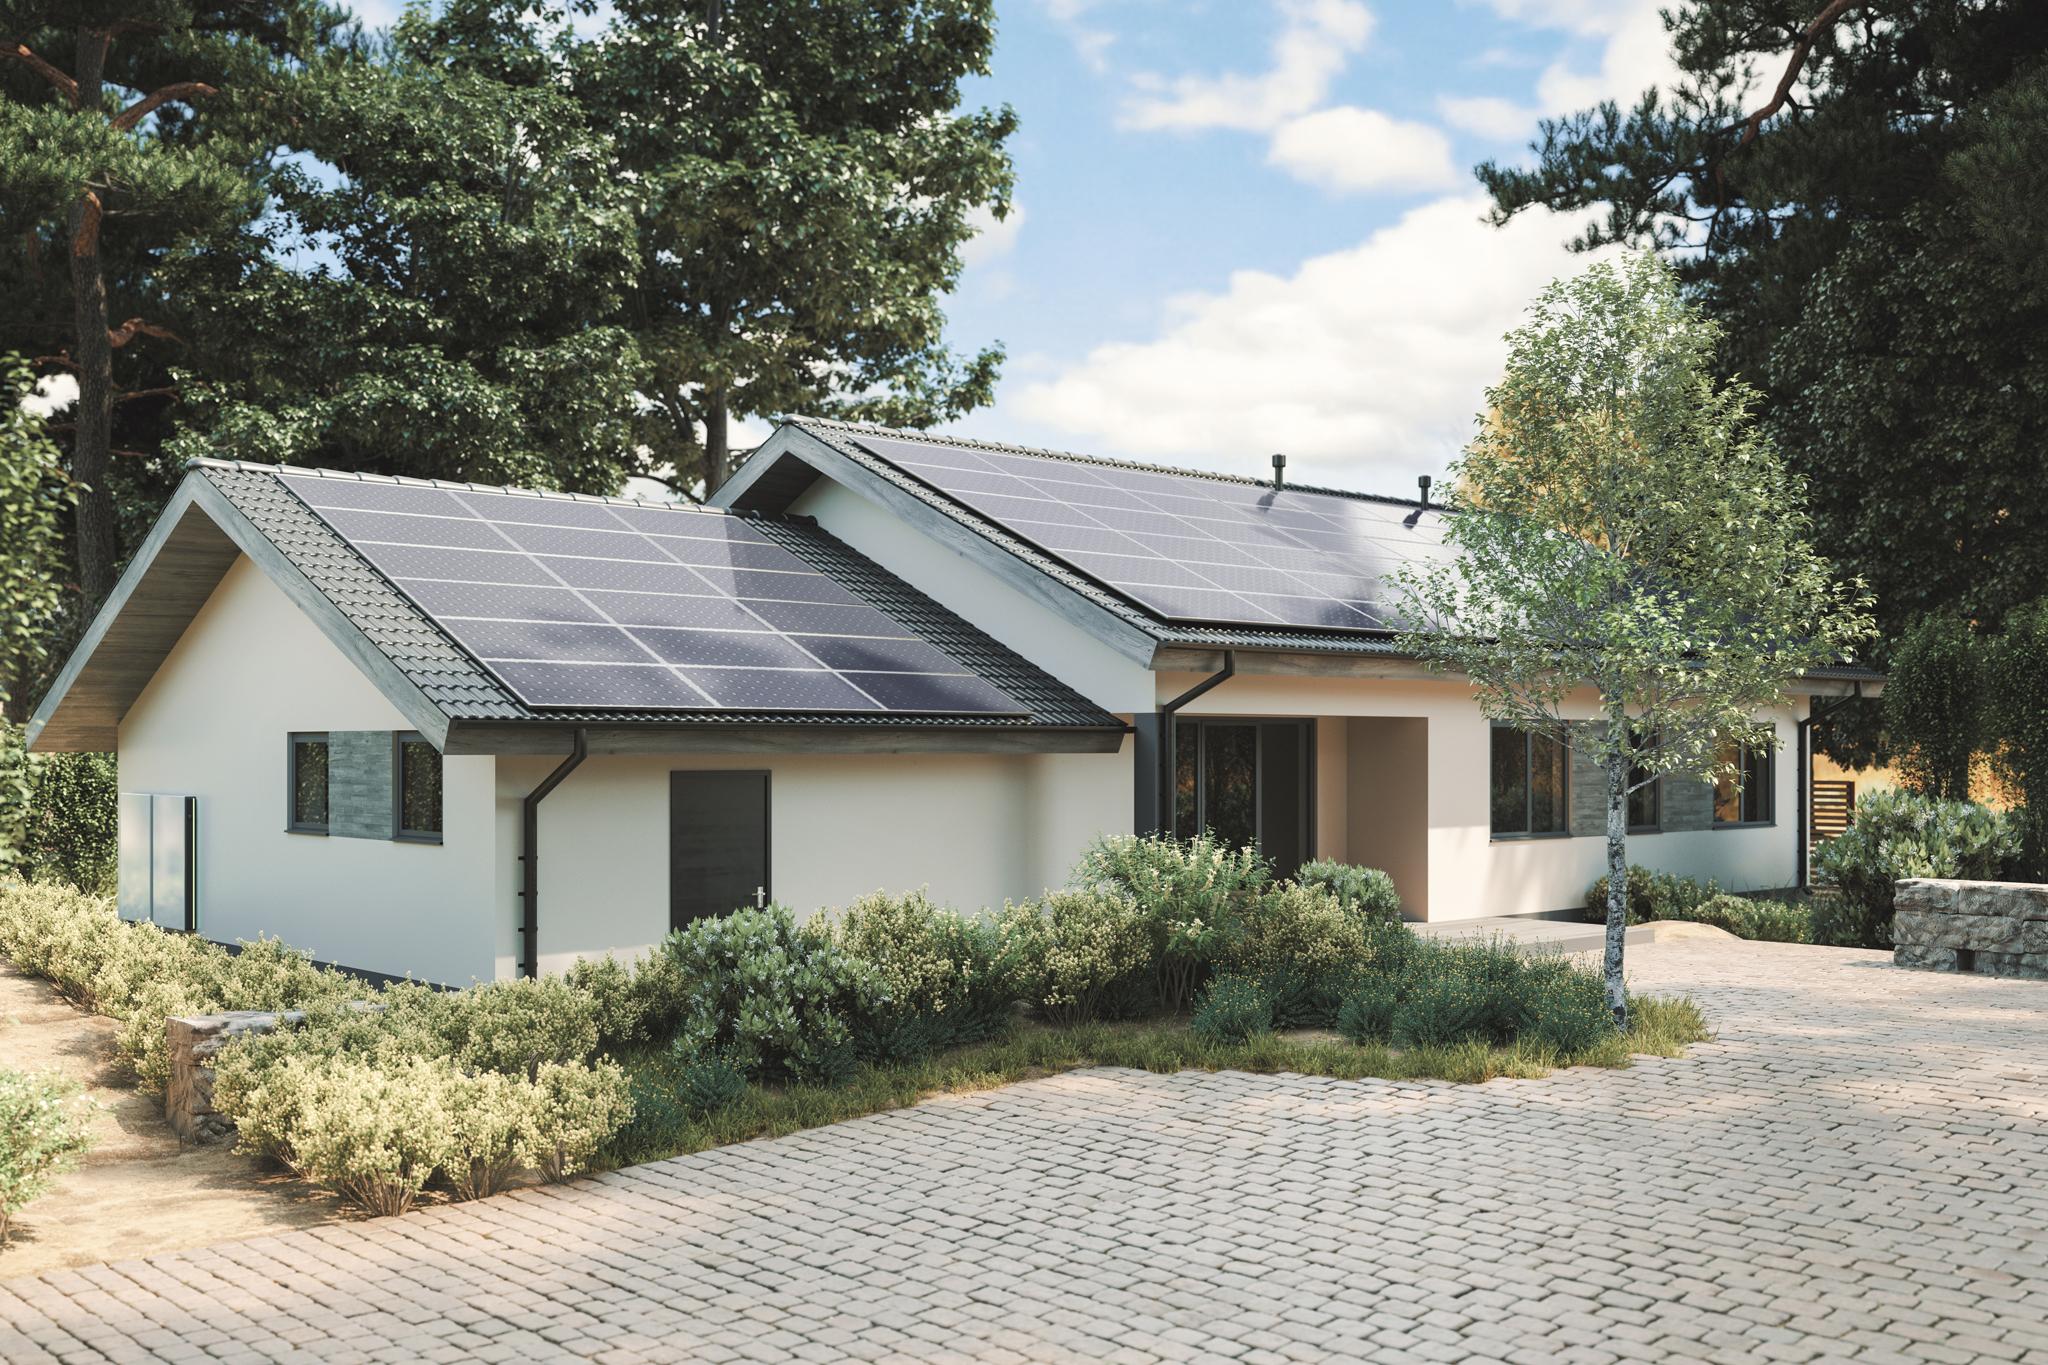 Einfamilienhaus mit PV-Anlage auf dem Dach - LG Solarmodule im Vergleich